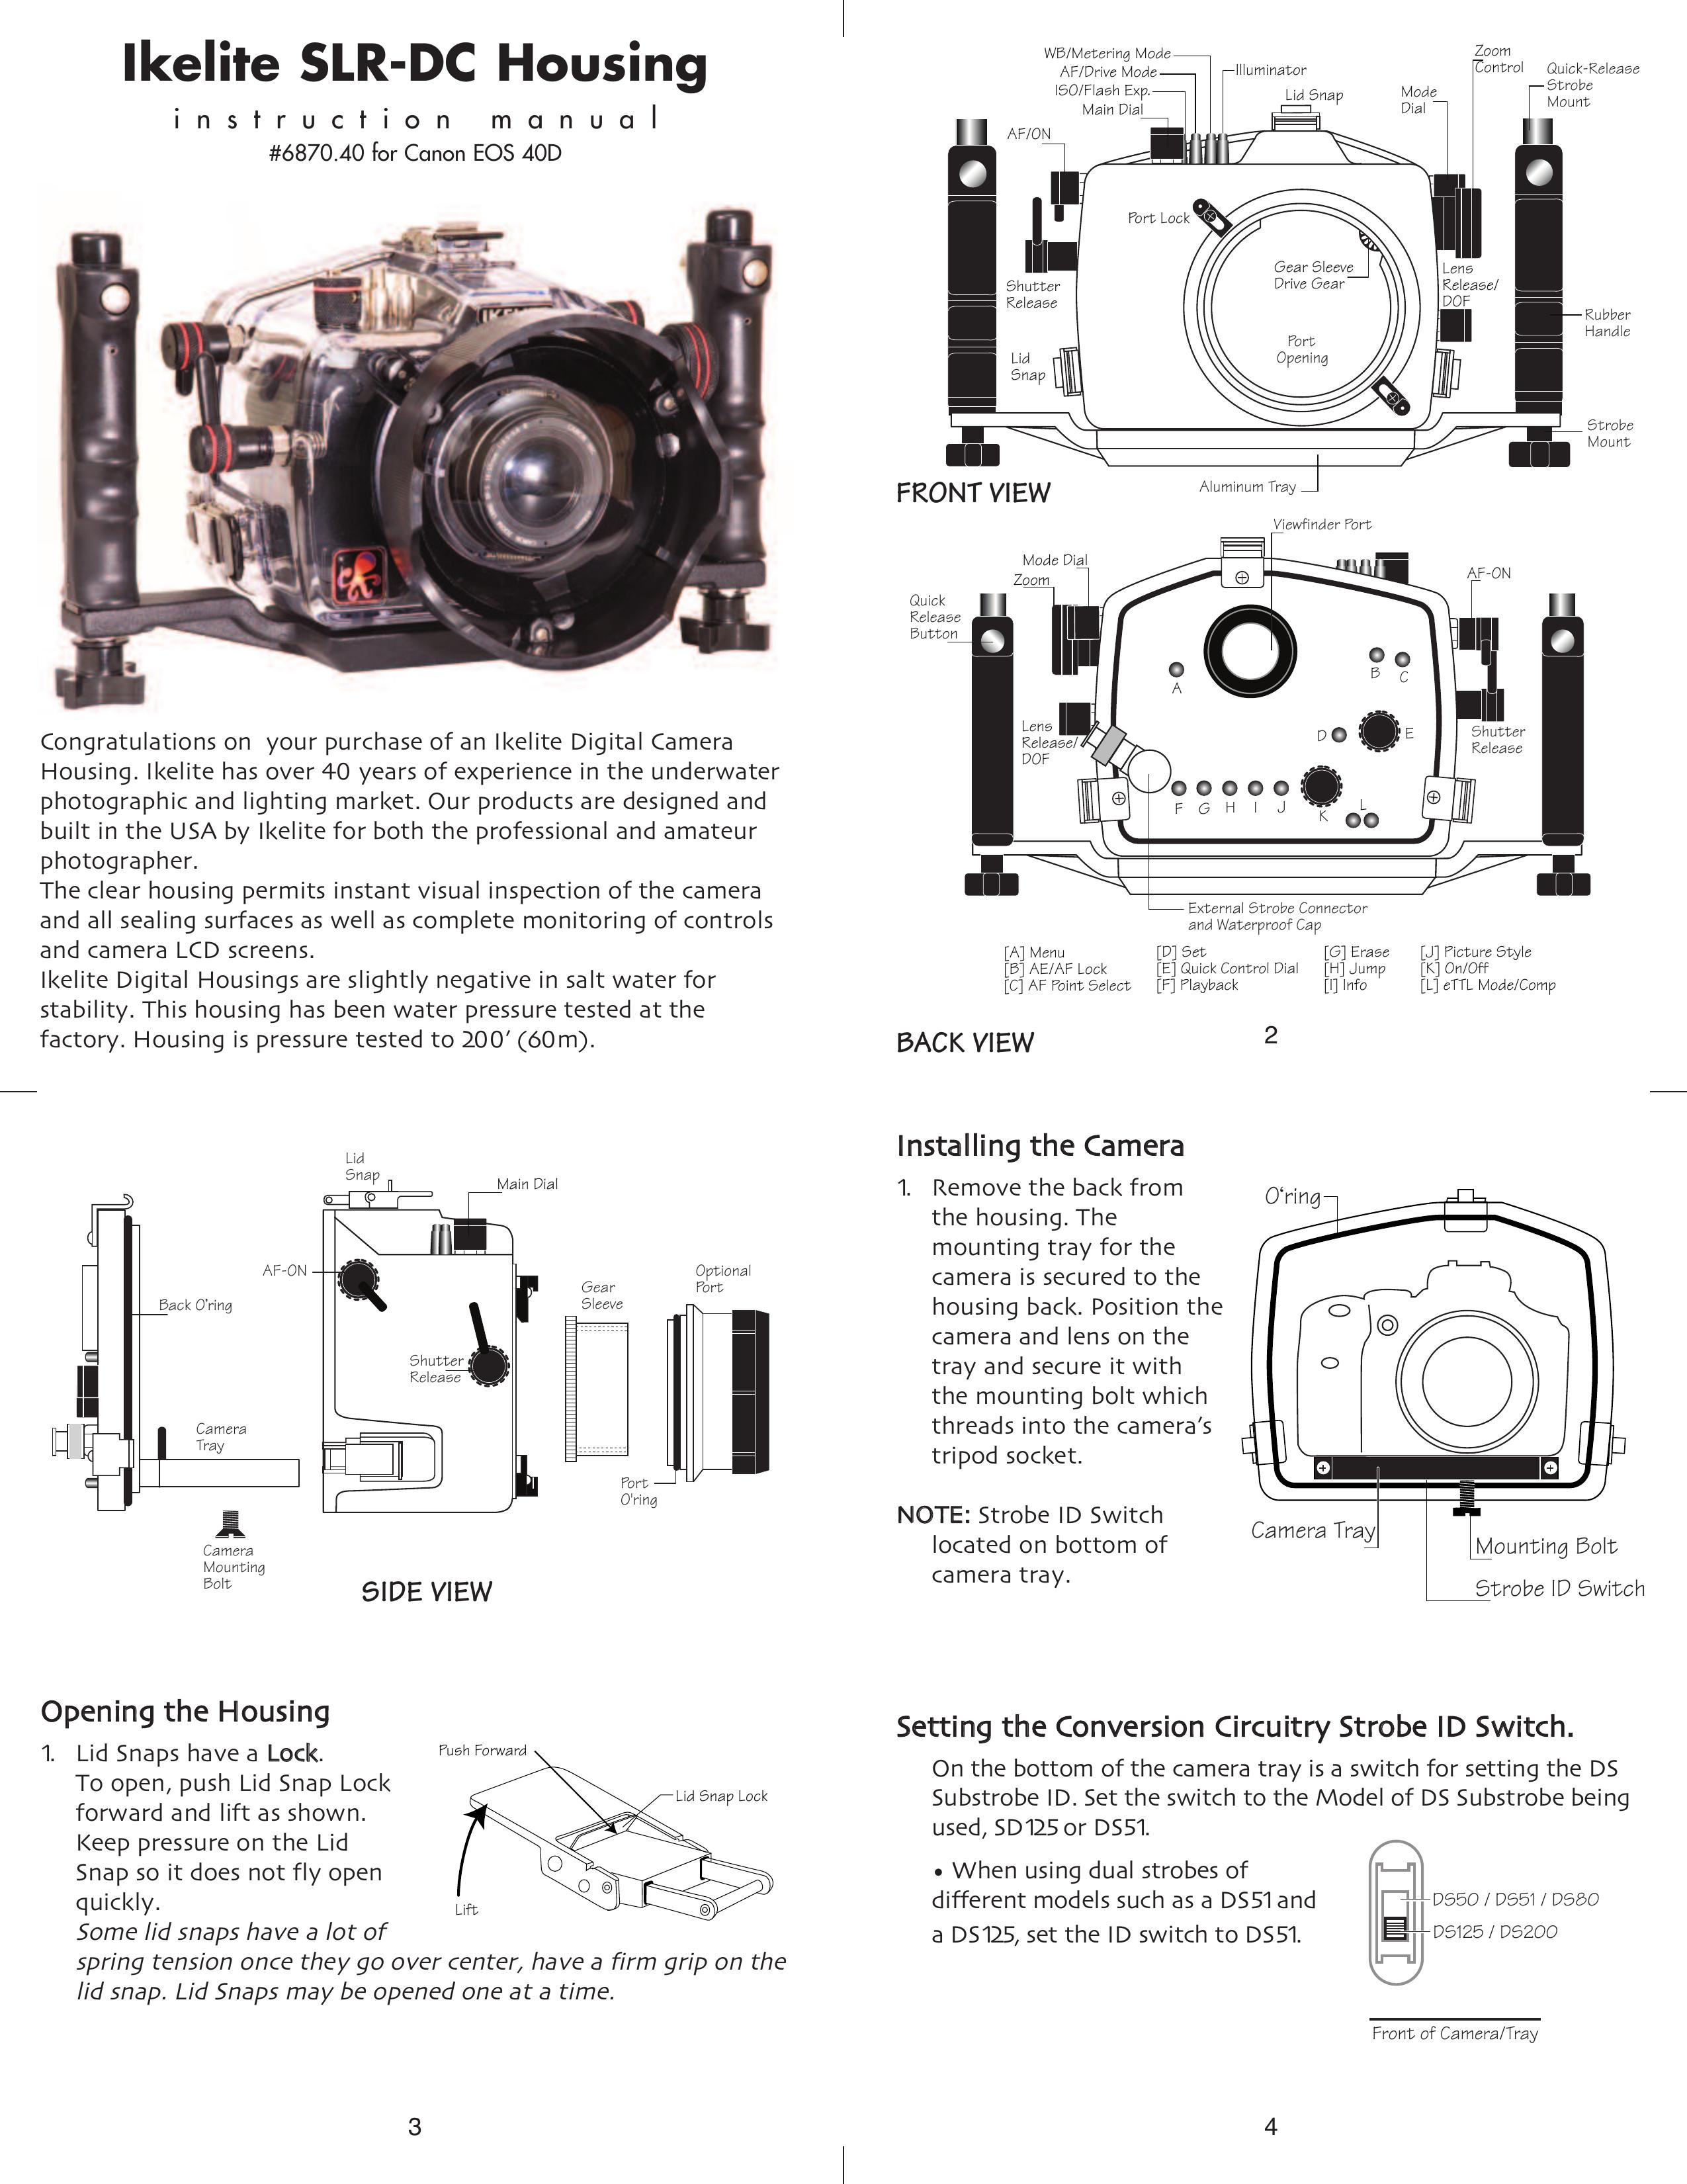 Ikelite EOS-40D Digital Camera User Manual